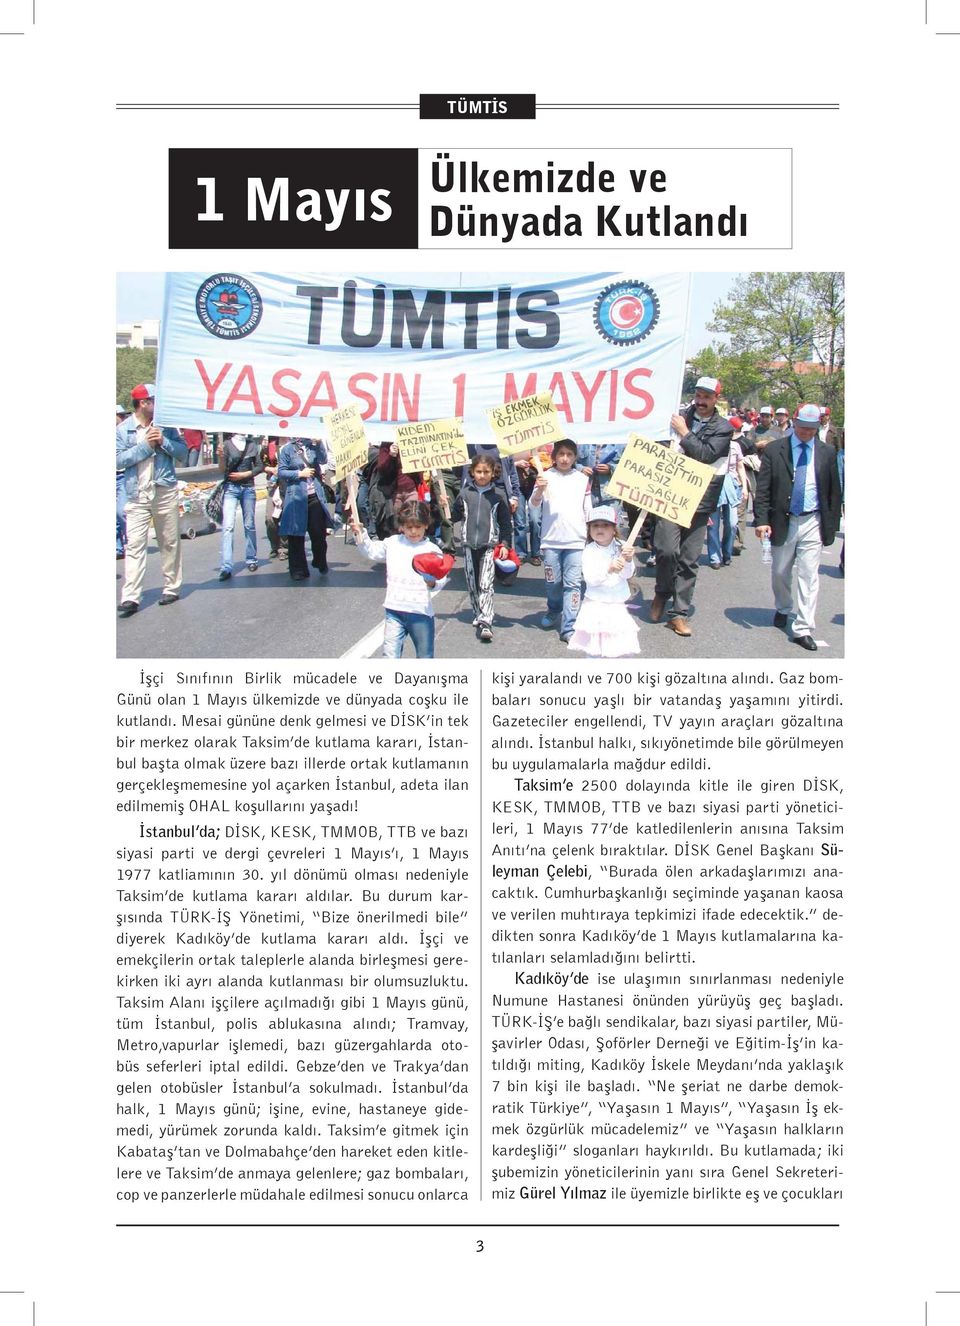 edilmemiş OHAL koşullarını yaşadı! İstanbul da; DİSK, KESK, TMMOB, TTB ve bazı siyasi parti ve dergi çevreleri 1 Mayıs ı, 1 Mayıs 1977 katliamının 30.